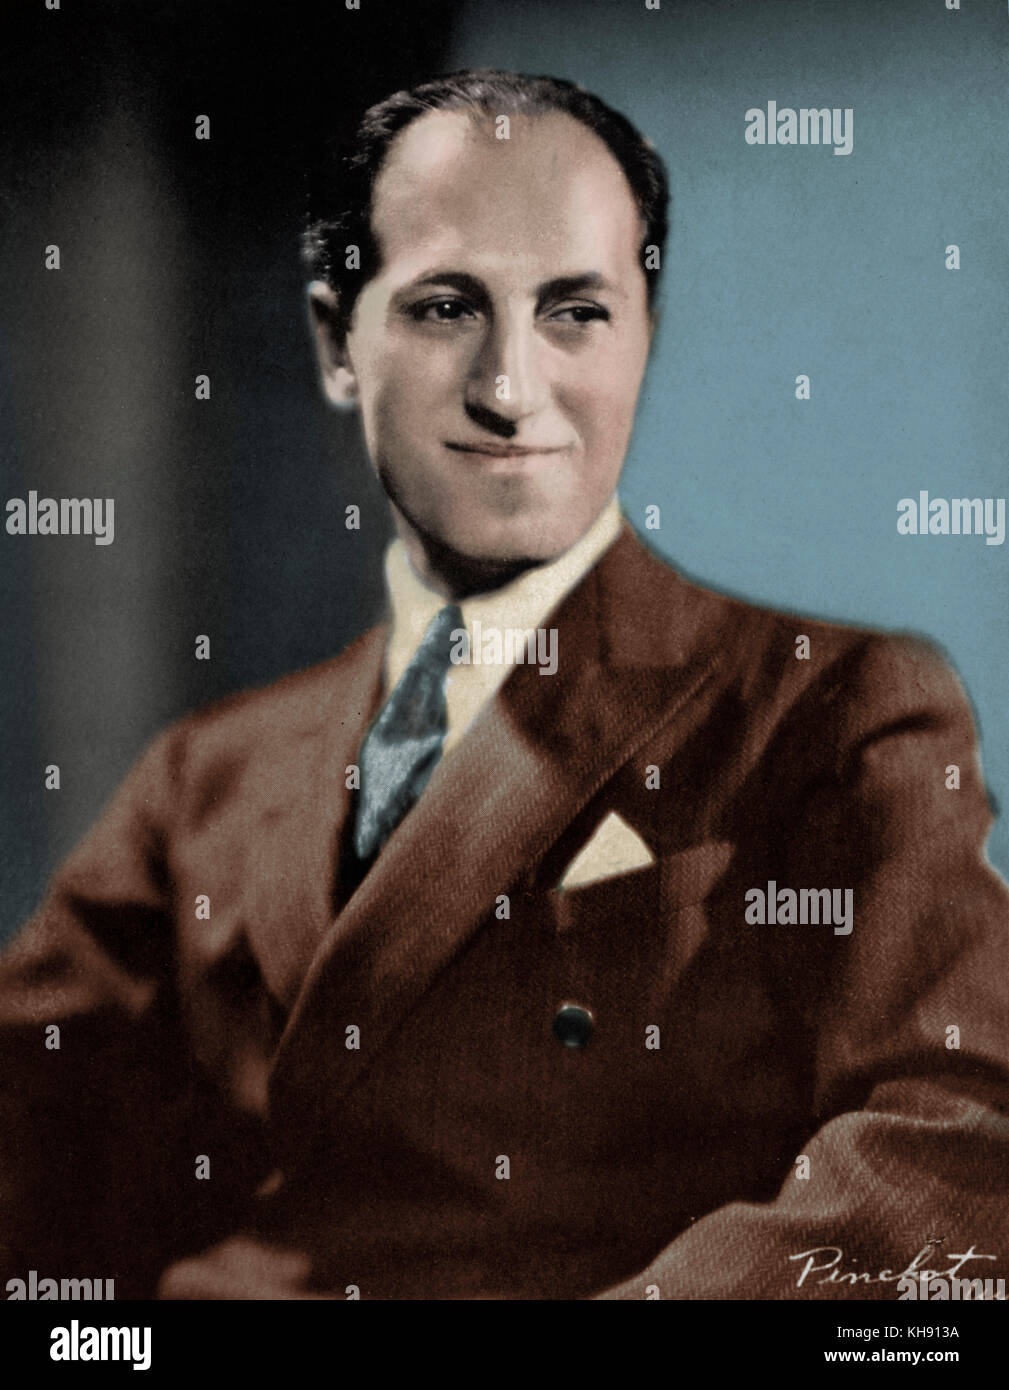 George Gershwin - retrato pianista y compositor norteamericano, el 26 de septiembre de 1898 - 11 de julio de 1937 Foto de stock